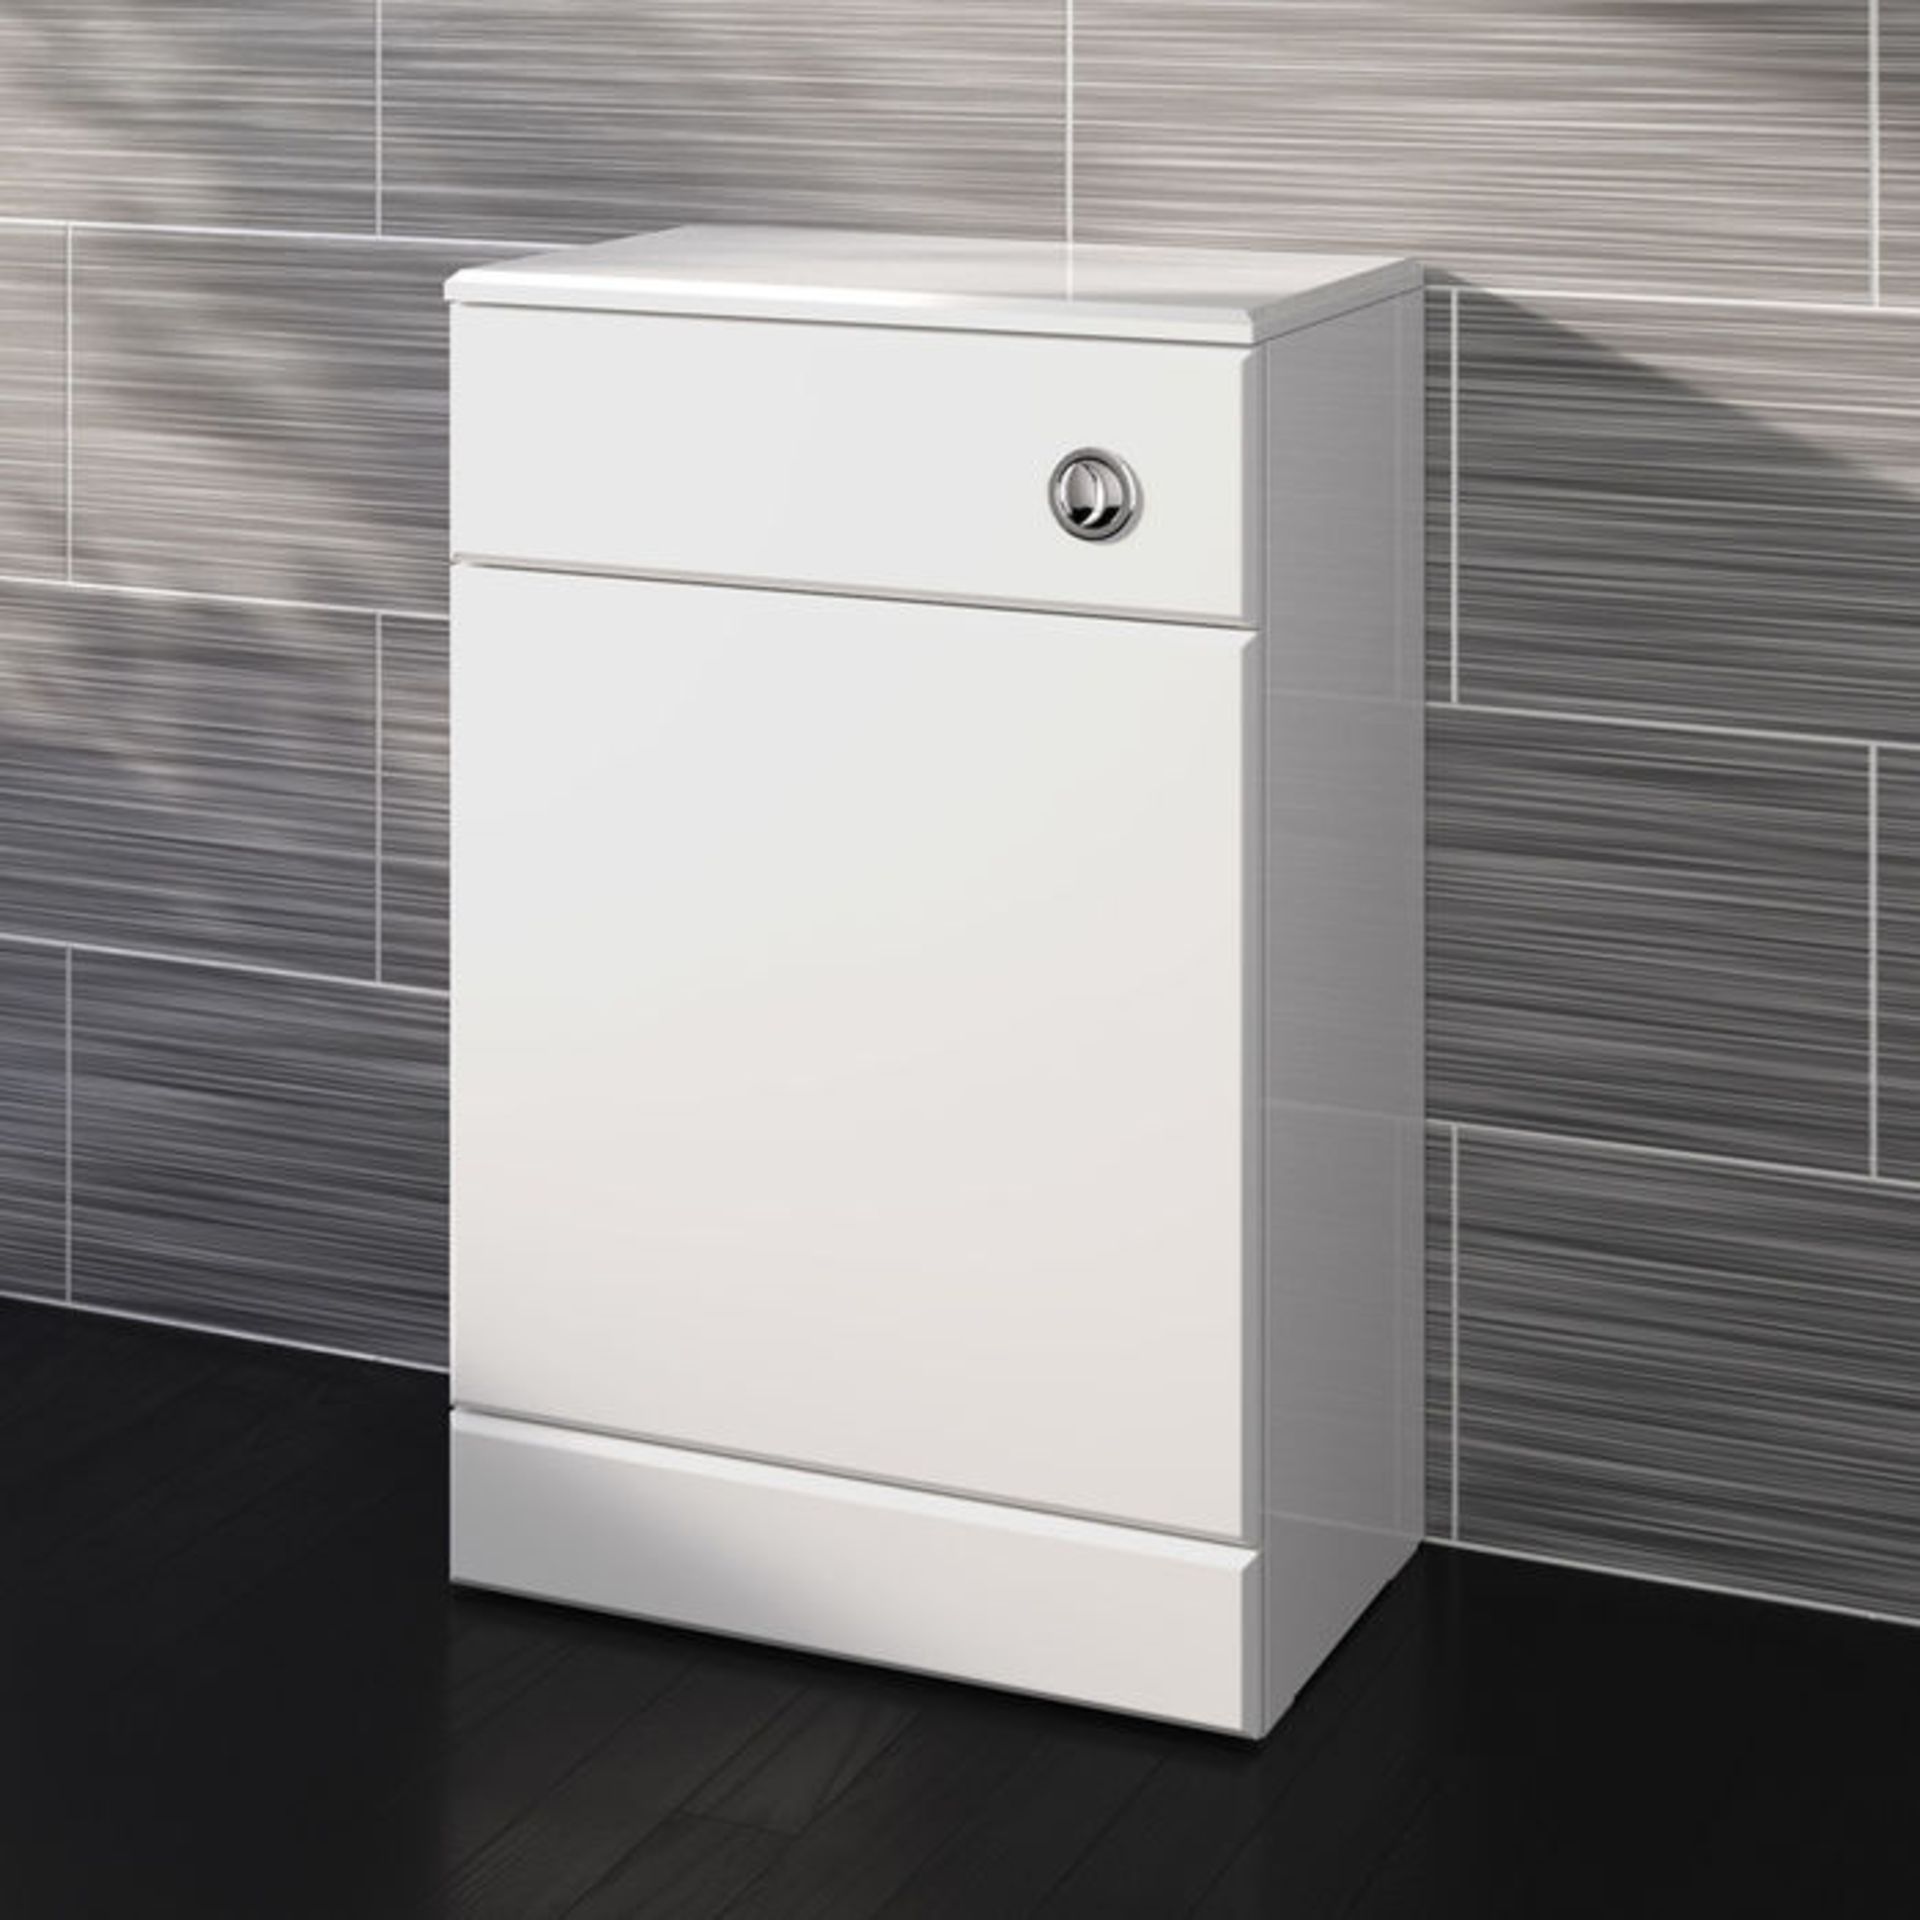 (AL289) 500x300mm Quartz Gloss White Back To Wall Toilet Unit. RRP £143.99. Pristine gloss white - Image 2 of 5